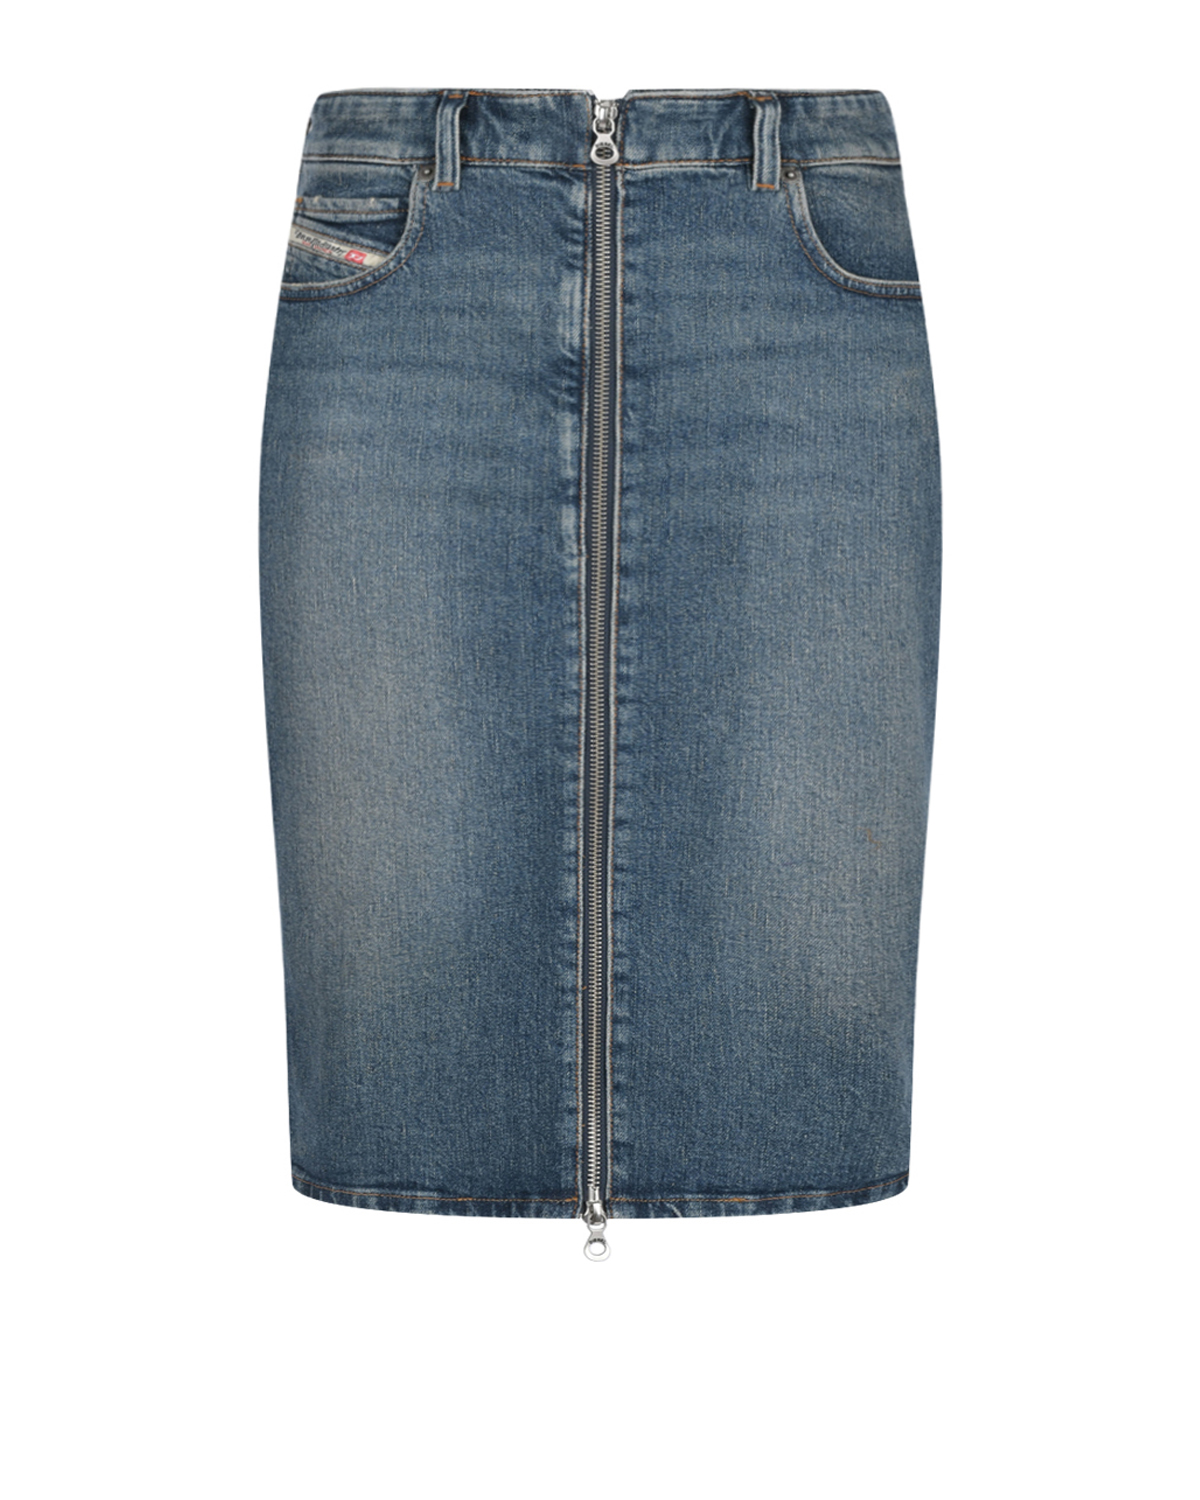 Джинсовая юбка с застежкой на молнию Diesel джинсовая мини юбка diesel